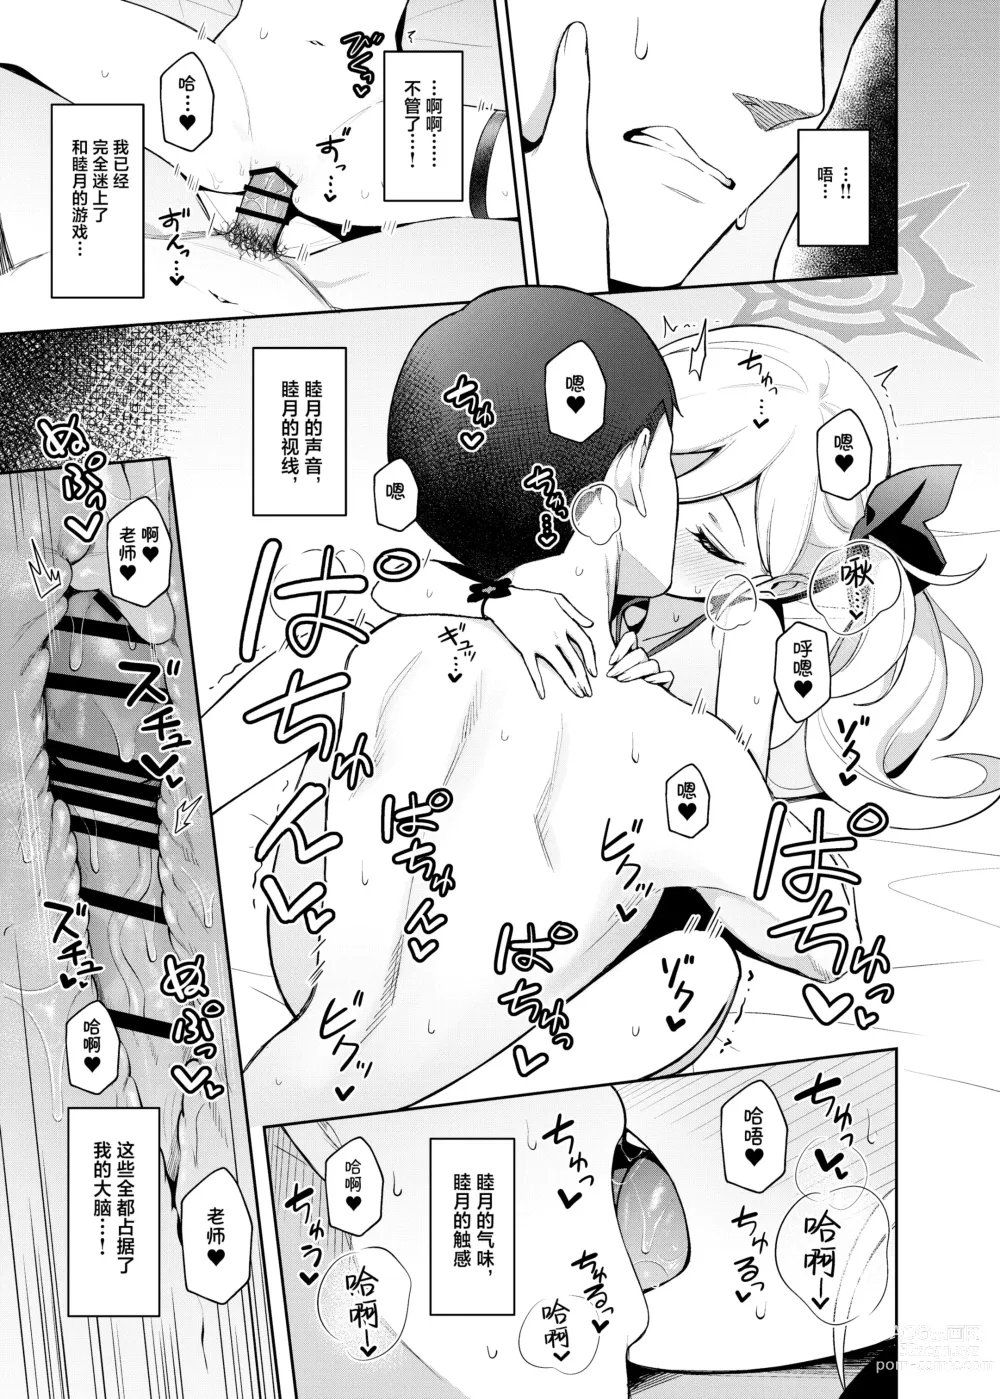 Page 18 of doujinshi Mutsuki wa Otona no Asobi ga Shitai